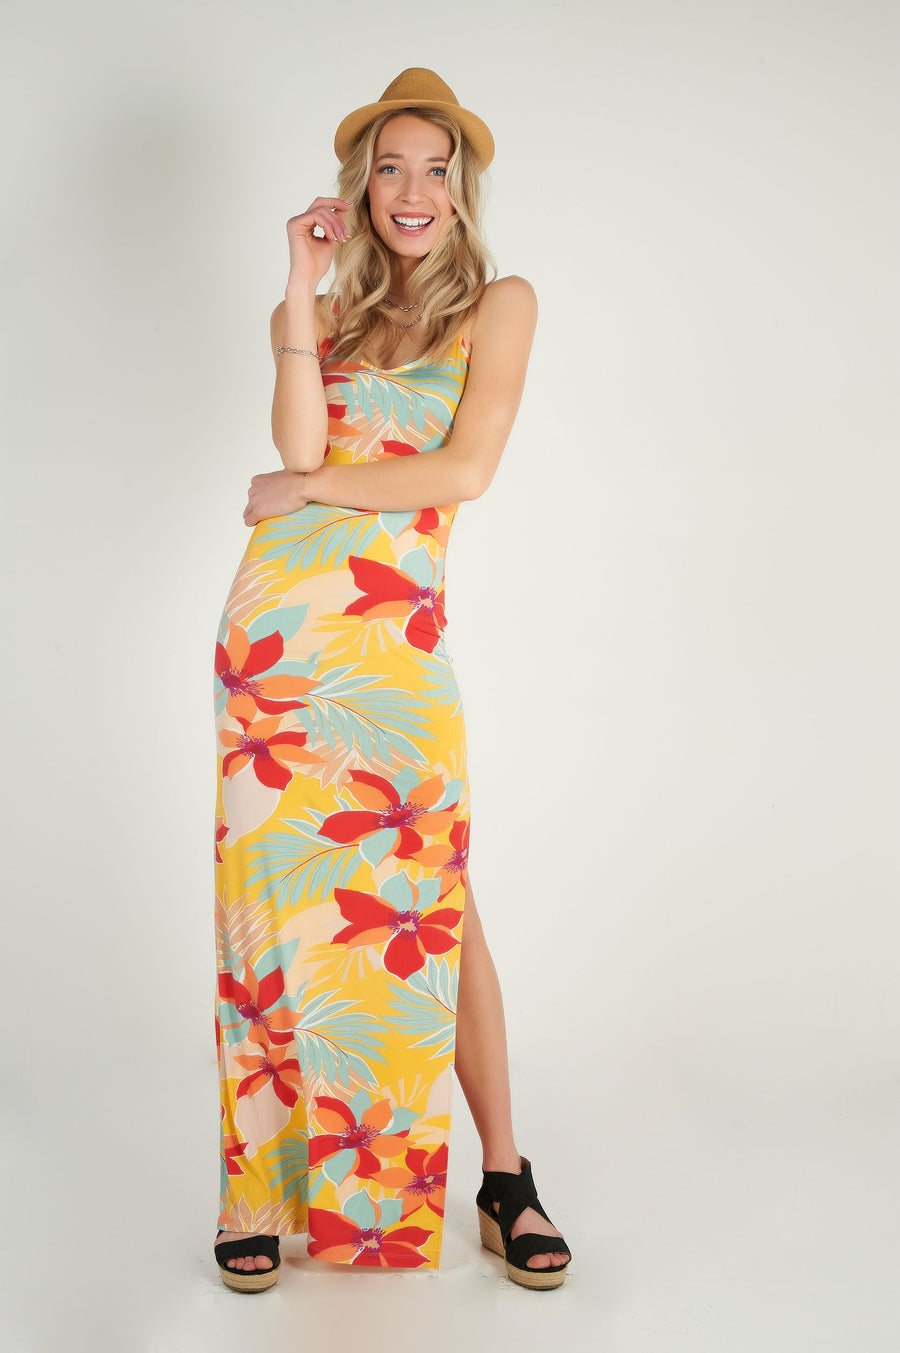 magasinez la robe maxi fleurie de chez colori collection printemps été - shop the floral maxi dress spring summer collection